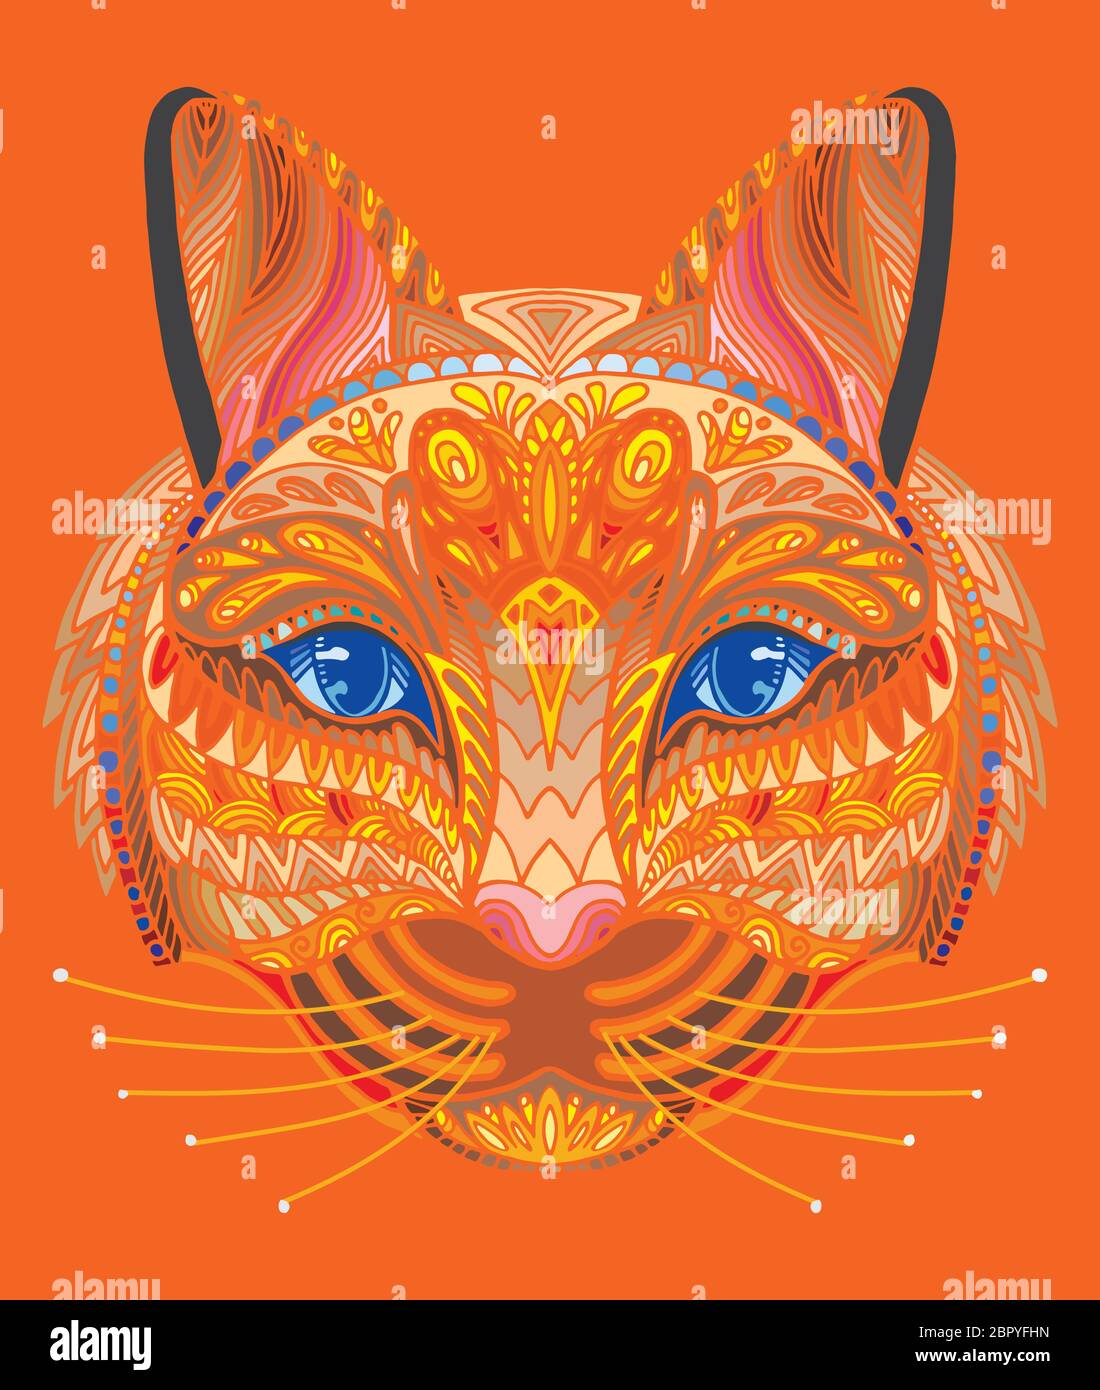 Vettore decorativo doodle testa ornamentale del gatto. Vettore astratto colorato illustrazione della testa di gatto isolato su sfondo arancione. Illustrazione del magazzino f Illustrazione Vettoriale